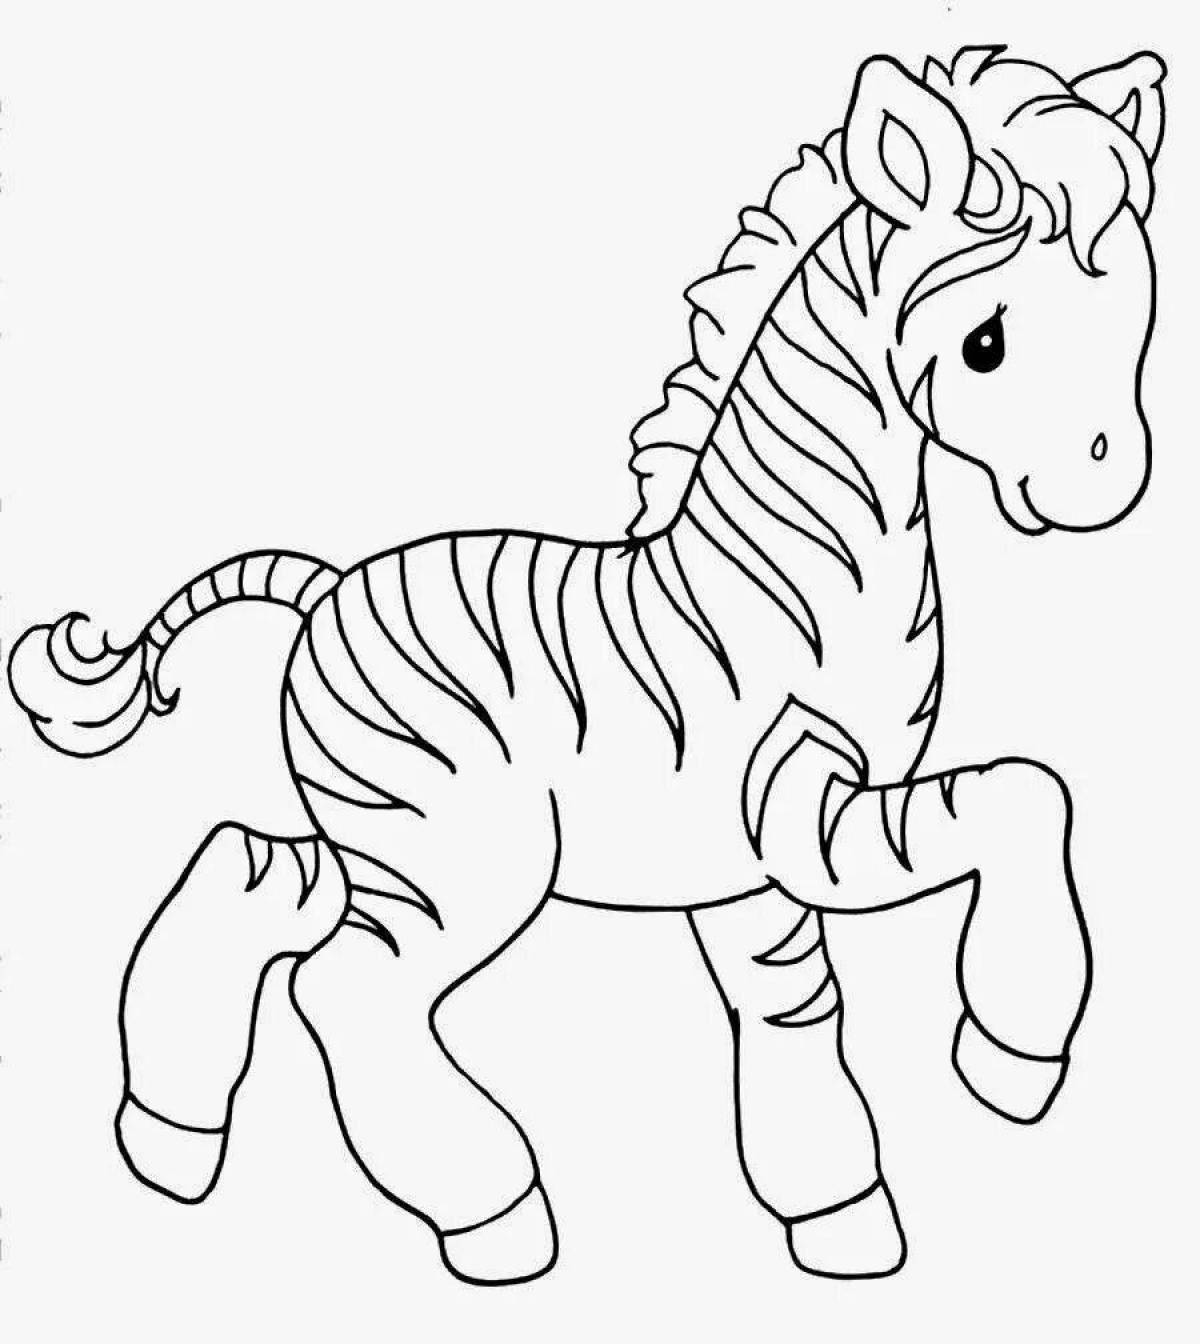 Чудесная зебра-раскраска для детей 3-4 лет